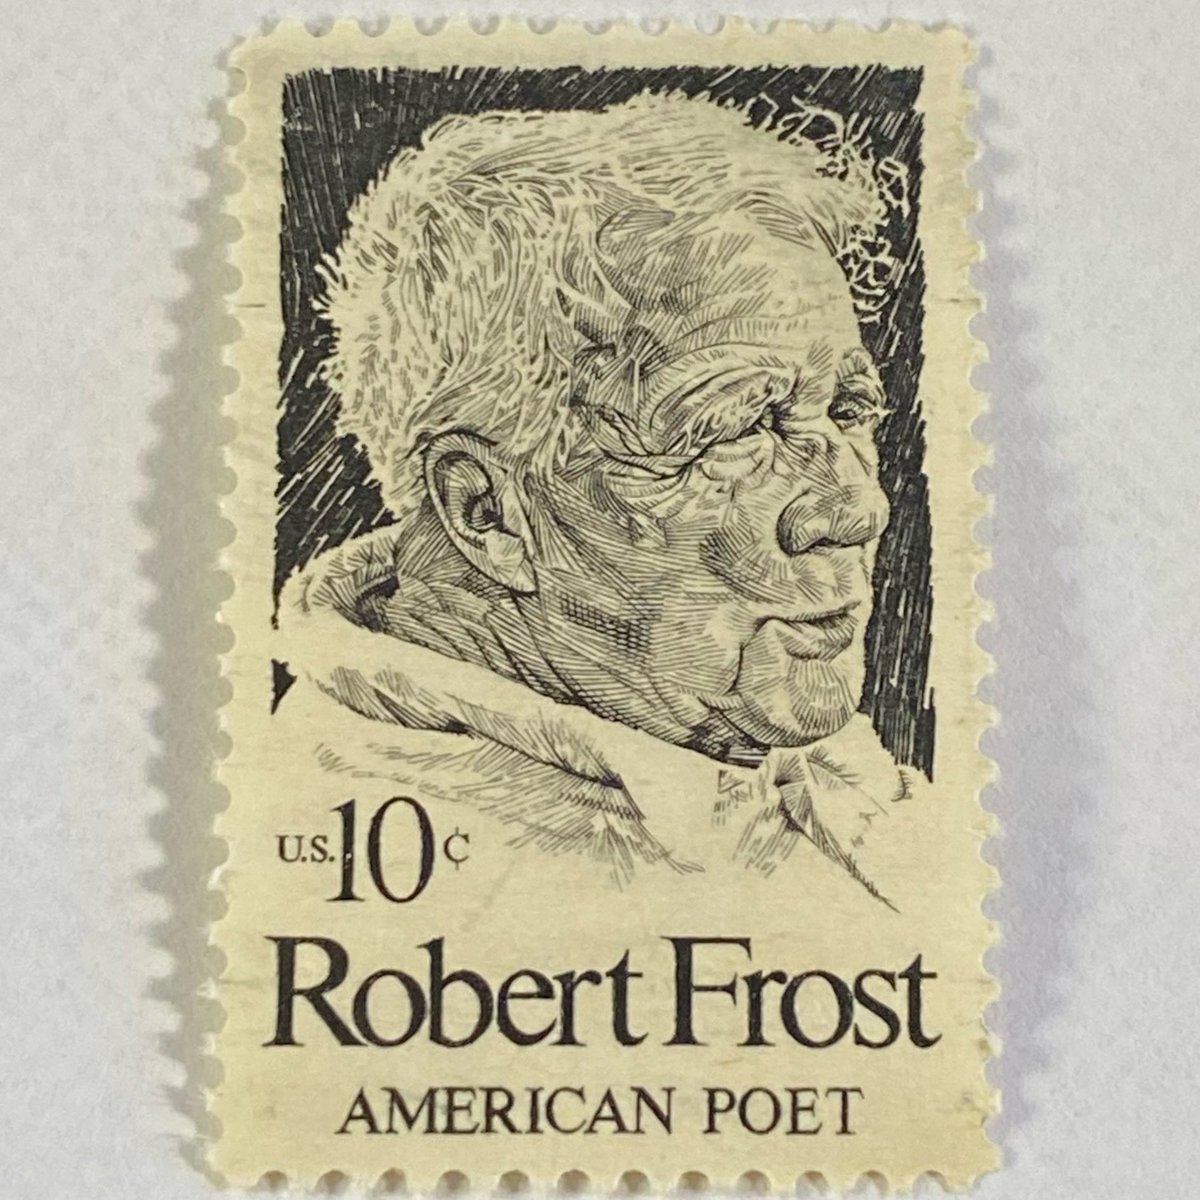 #stamps #uspsstamps #robertfrost #poetry #poets #americanpoet